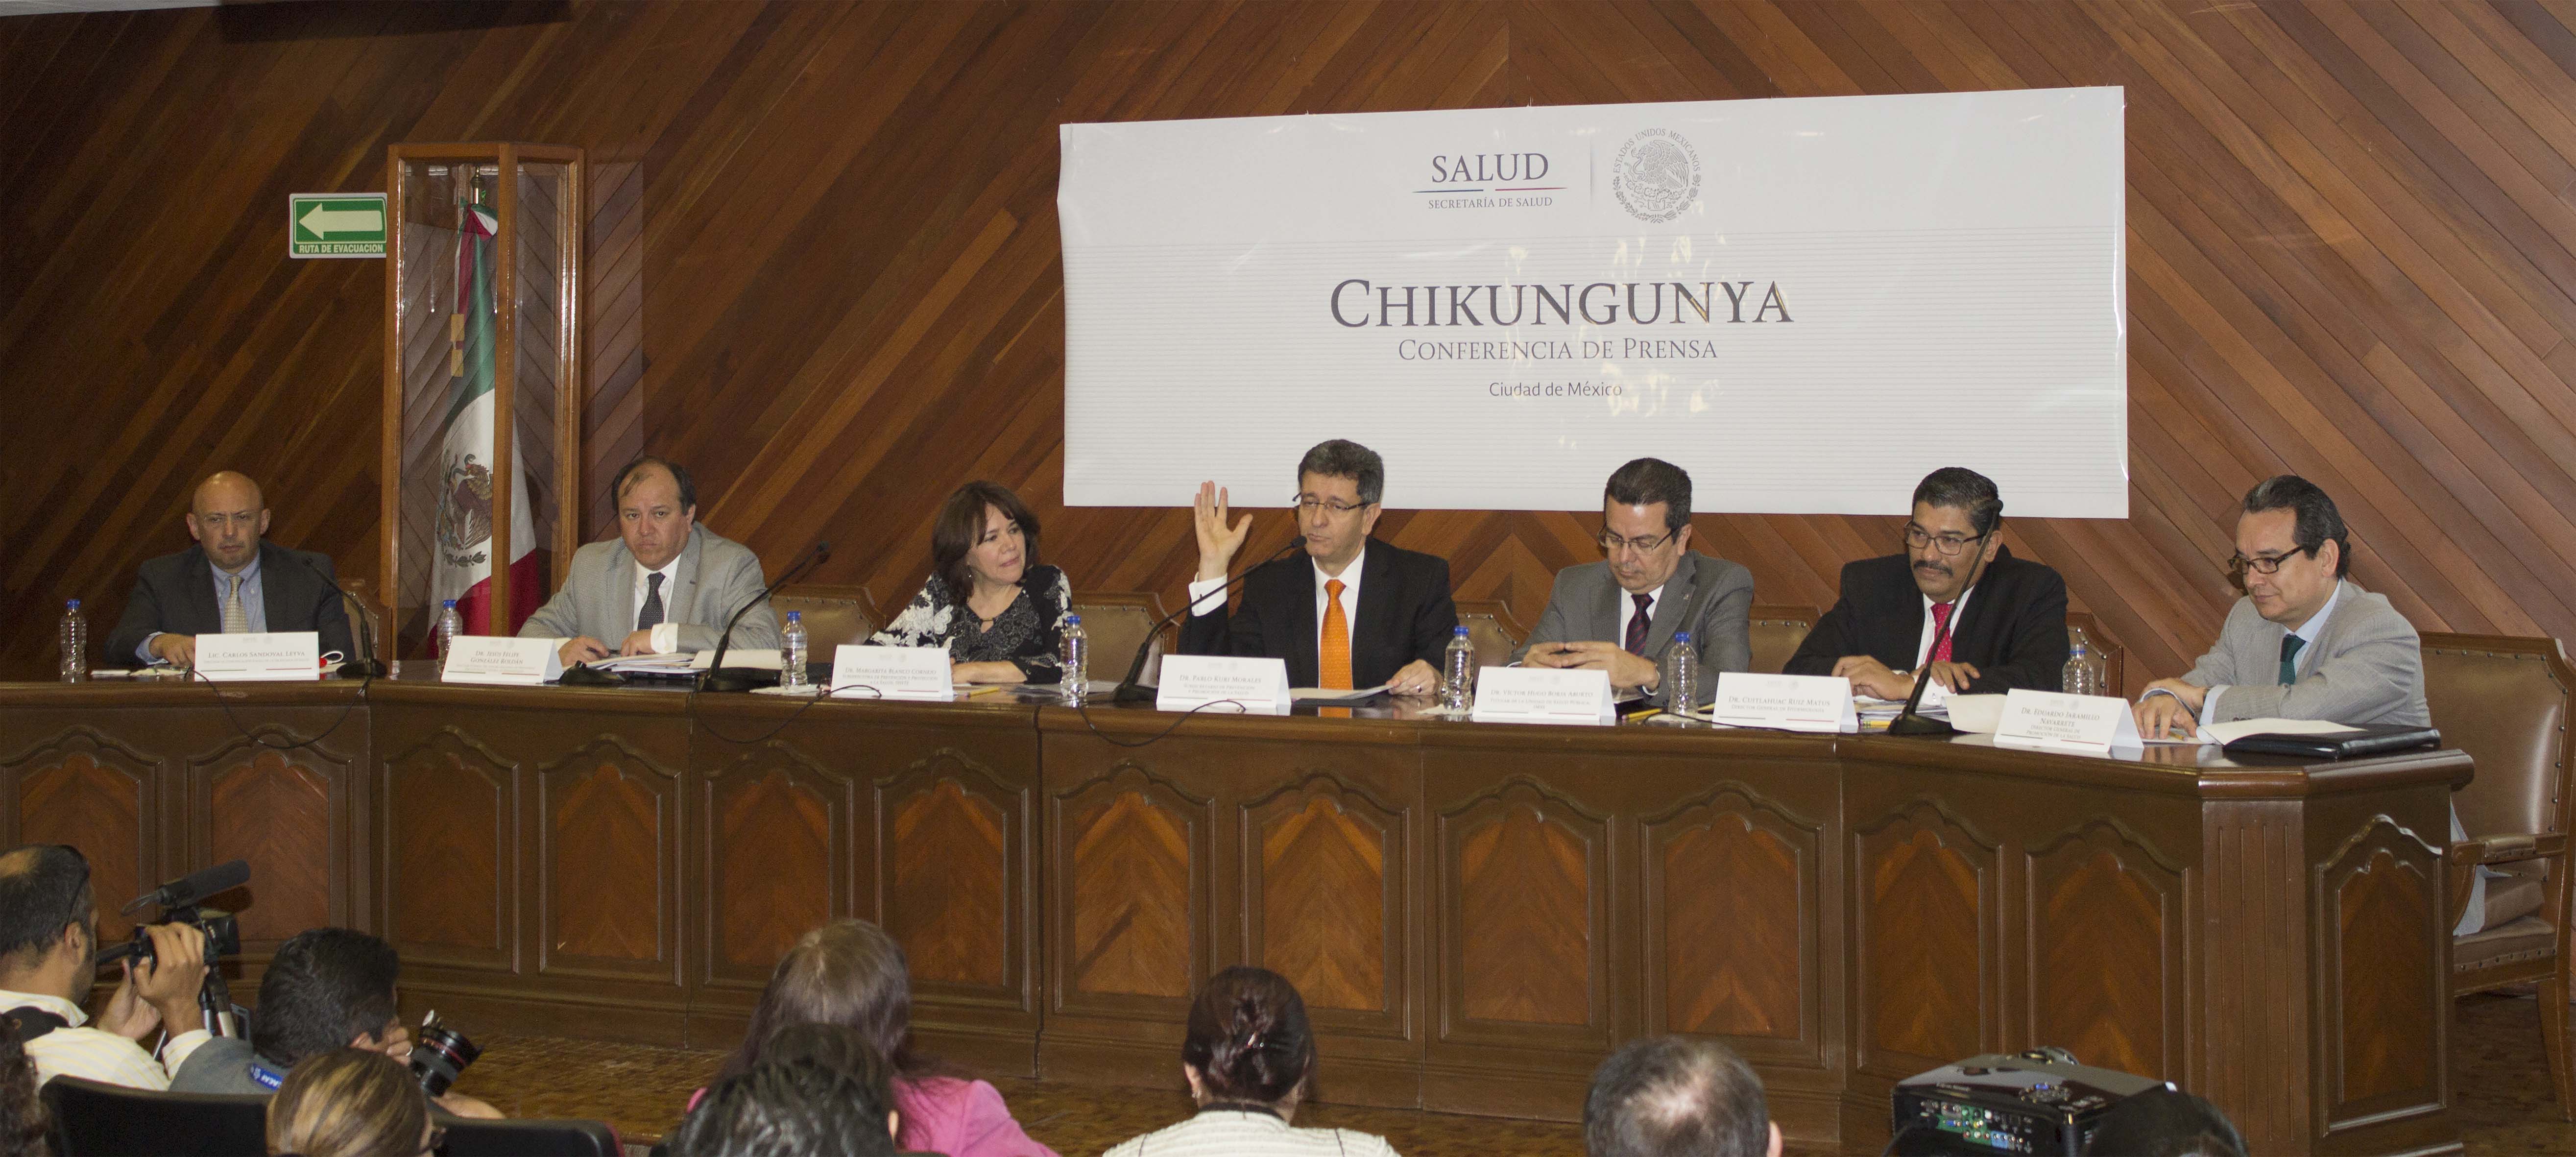 Conferencia de Prensa Chikungunya 260315  1 jpg